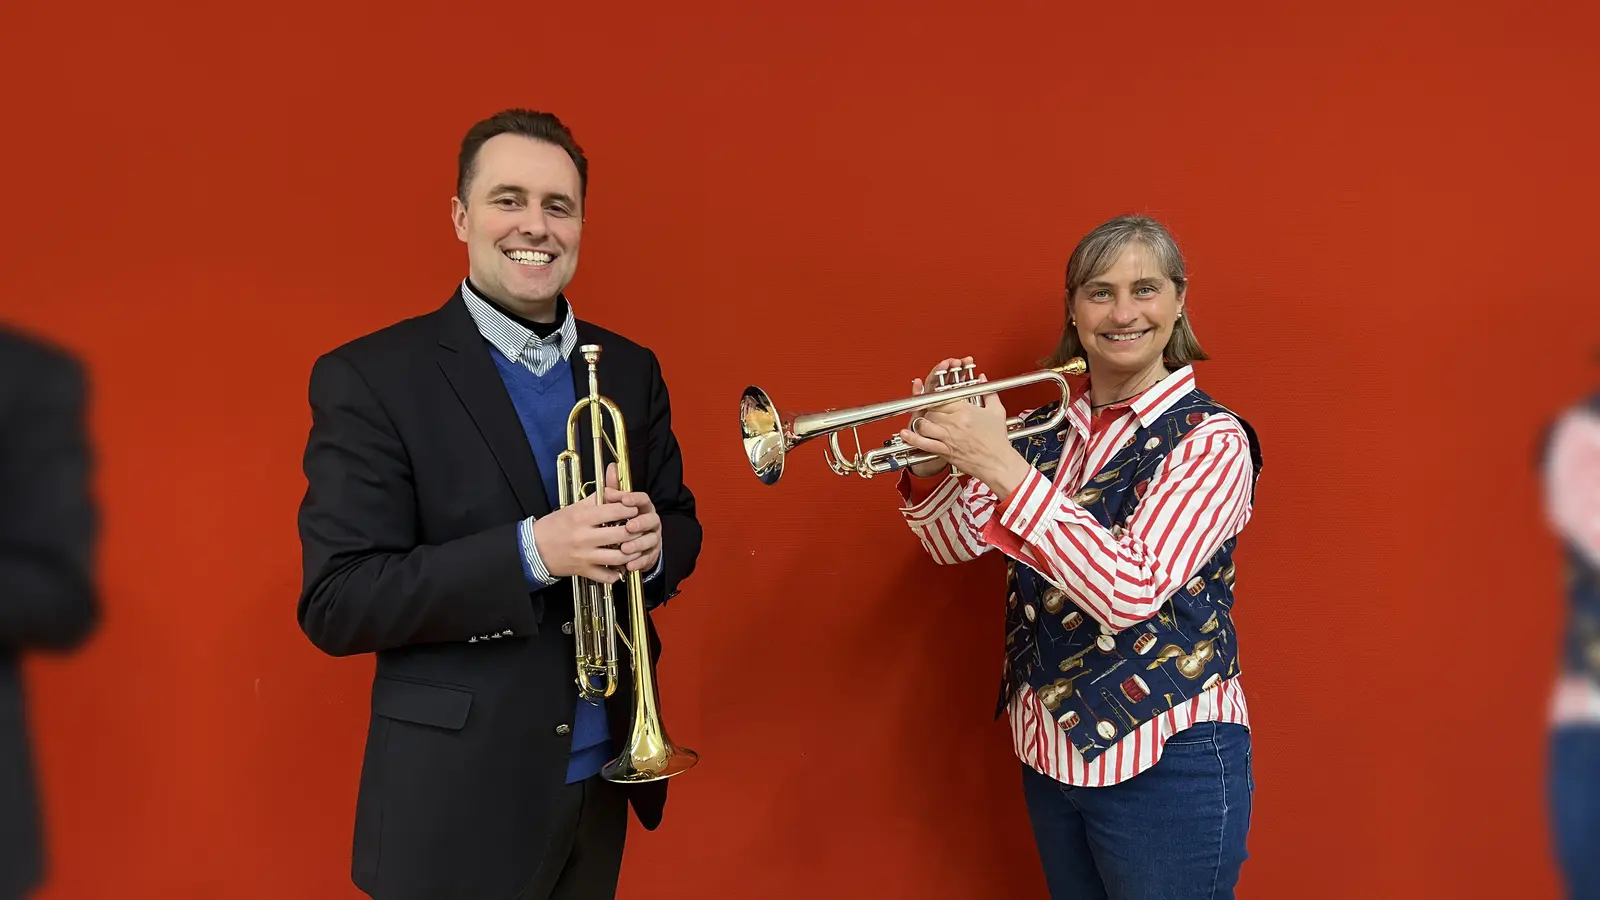 Musikschulleiter Simon van Zoest und Musikschullehrerin Kathy Freiboth präsentieren die Trompete, die man auch bei der Schnupperstunden-Sonderaktion ausprobieren kann. (Foto: Musikschule Hofgeismar)